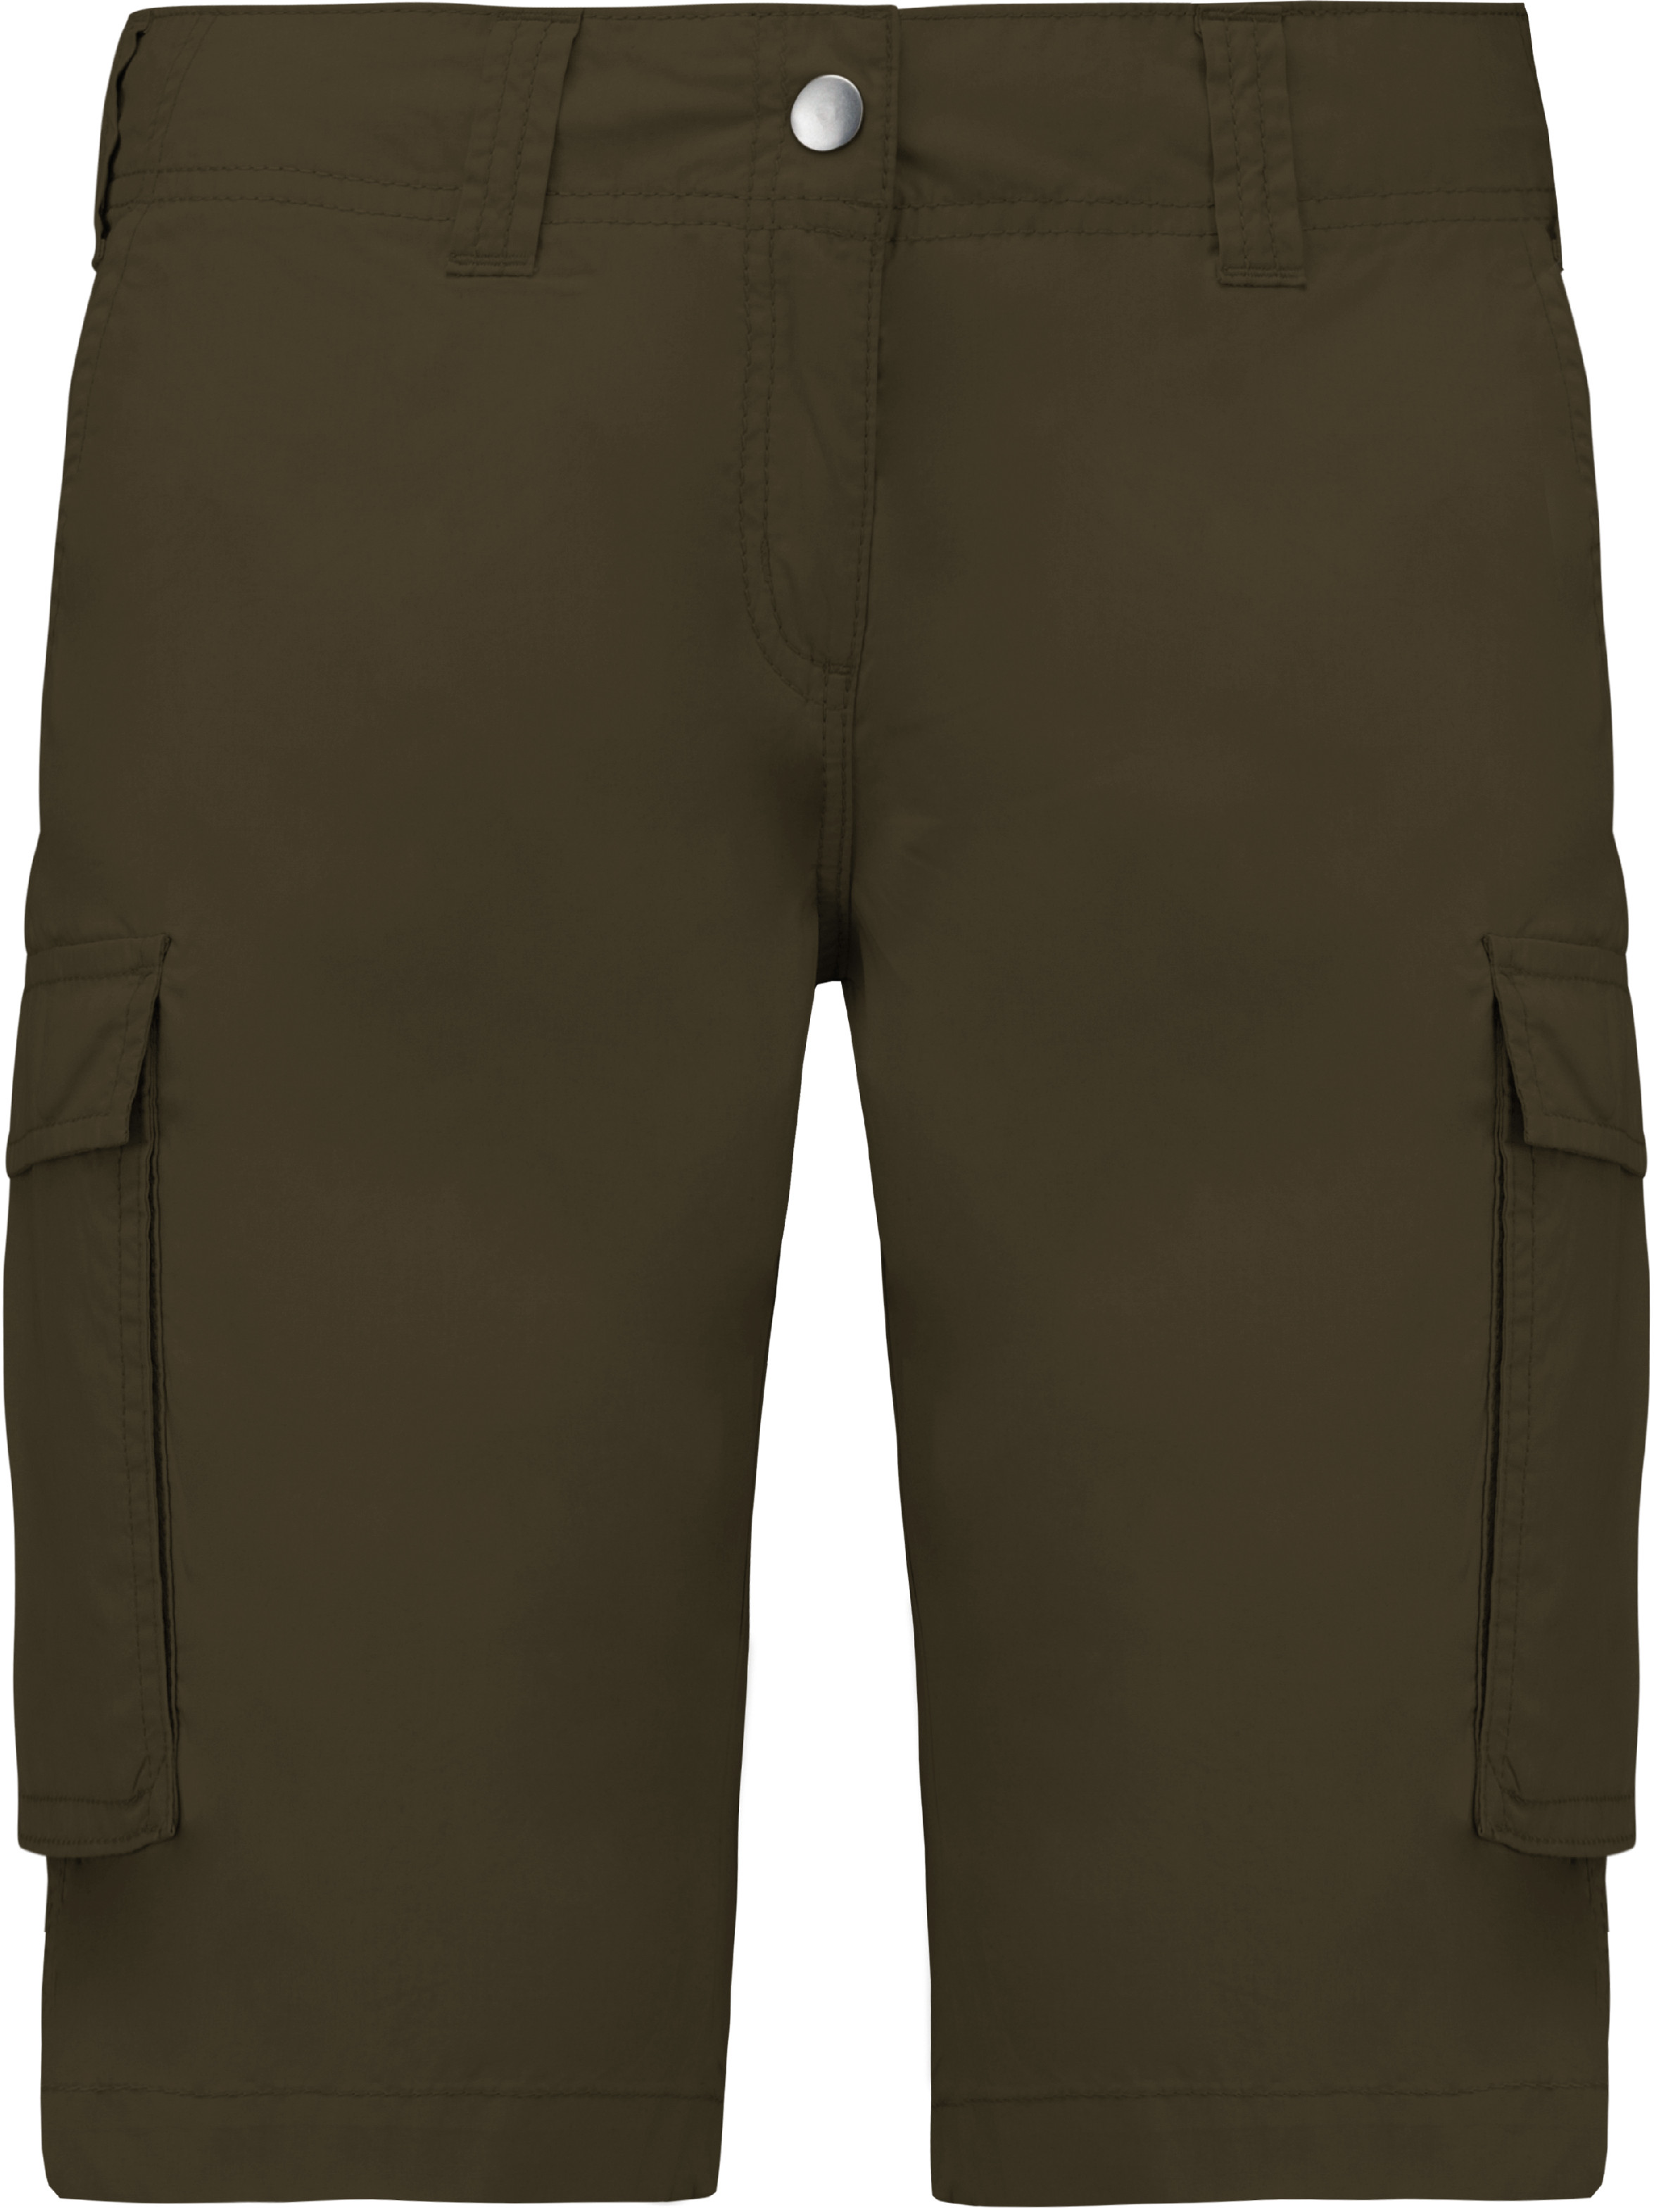 Dámské šortky s kapsami - Bermudy K756 Barva: khaki, Velikost: 42